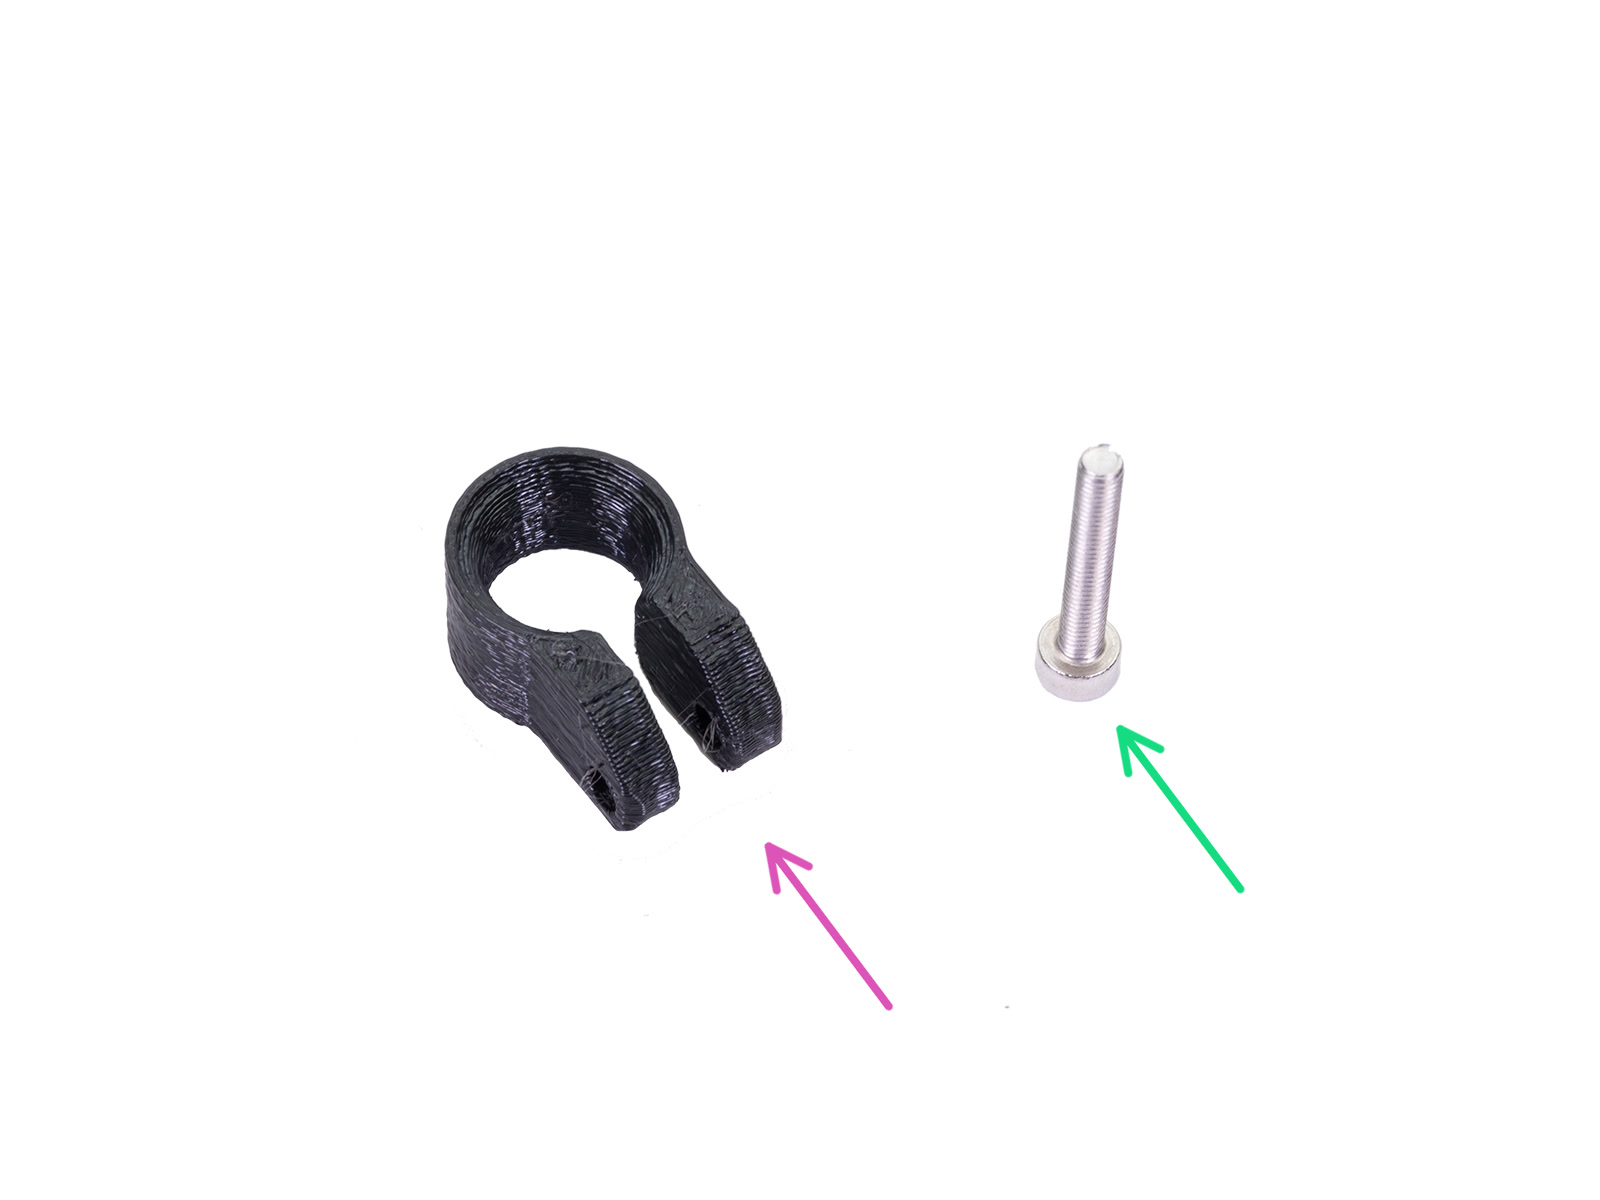 Fan-spacer-clip: parts preparation